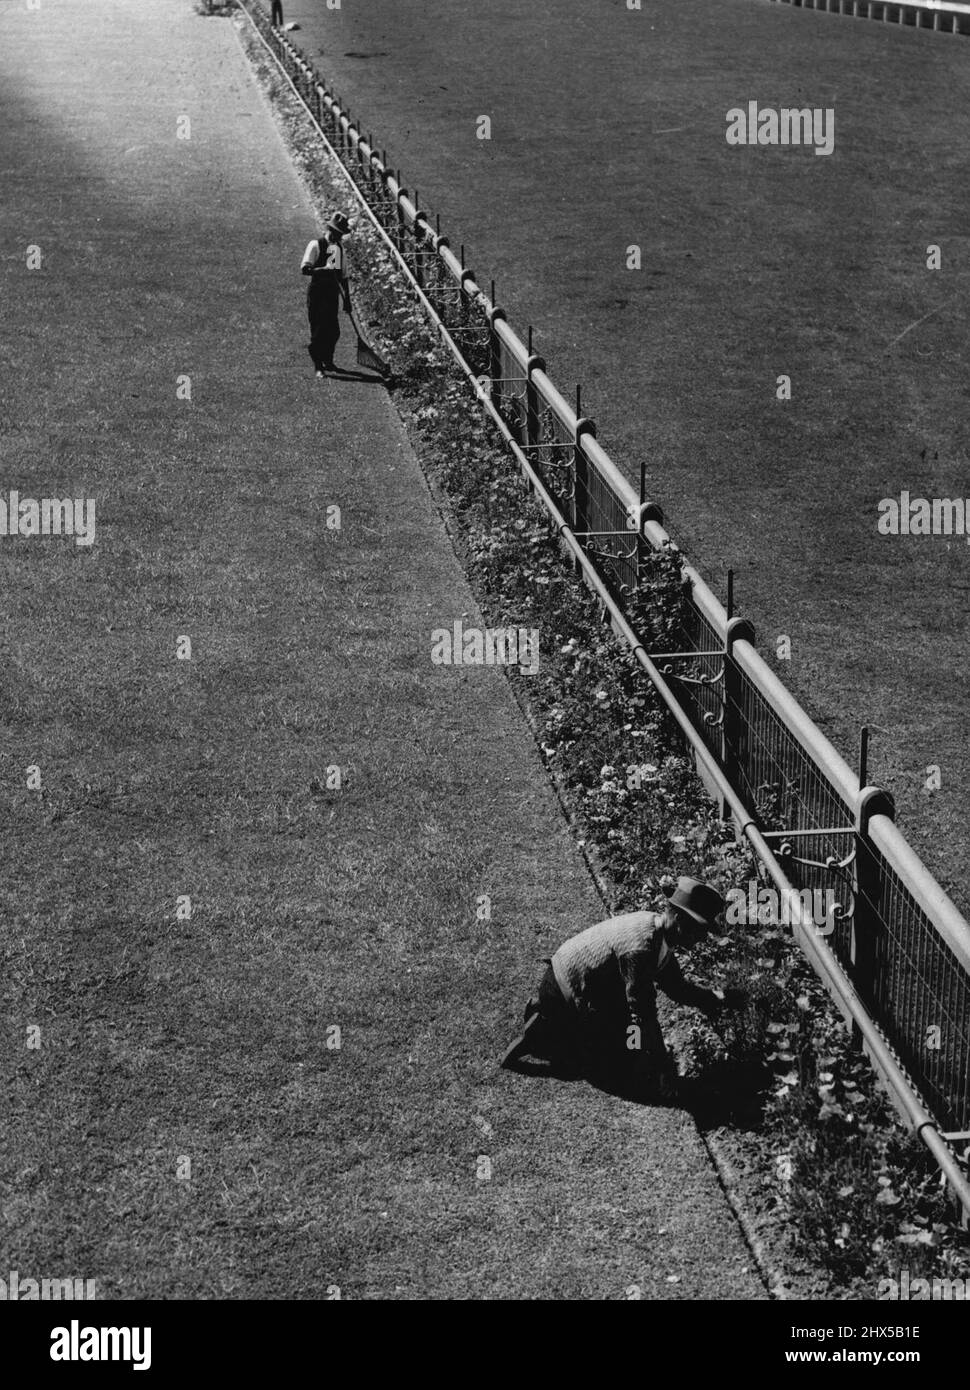 Spring Racing in Melbourne wird seinen Höhepunkt erreichen, wenn morgen das V.A.T.C. Meeting eröffnet wird. Die ganze Woche wurde besonders darauf geachtet, dass der Caulfield-Kurs und die Termine in einwandfreiem Zustand sind. 11. Oktober 1938. Stockfoto